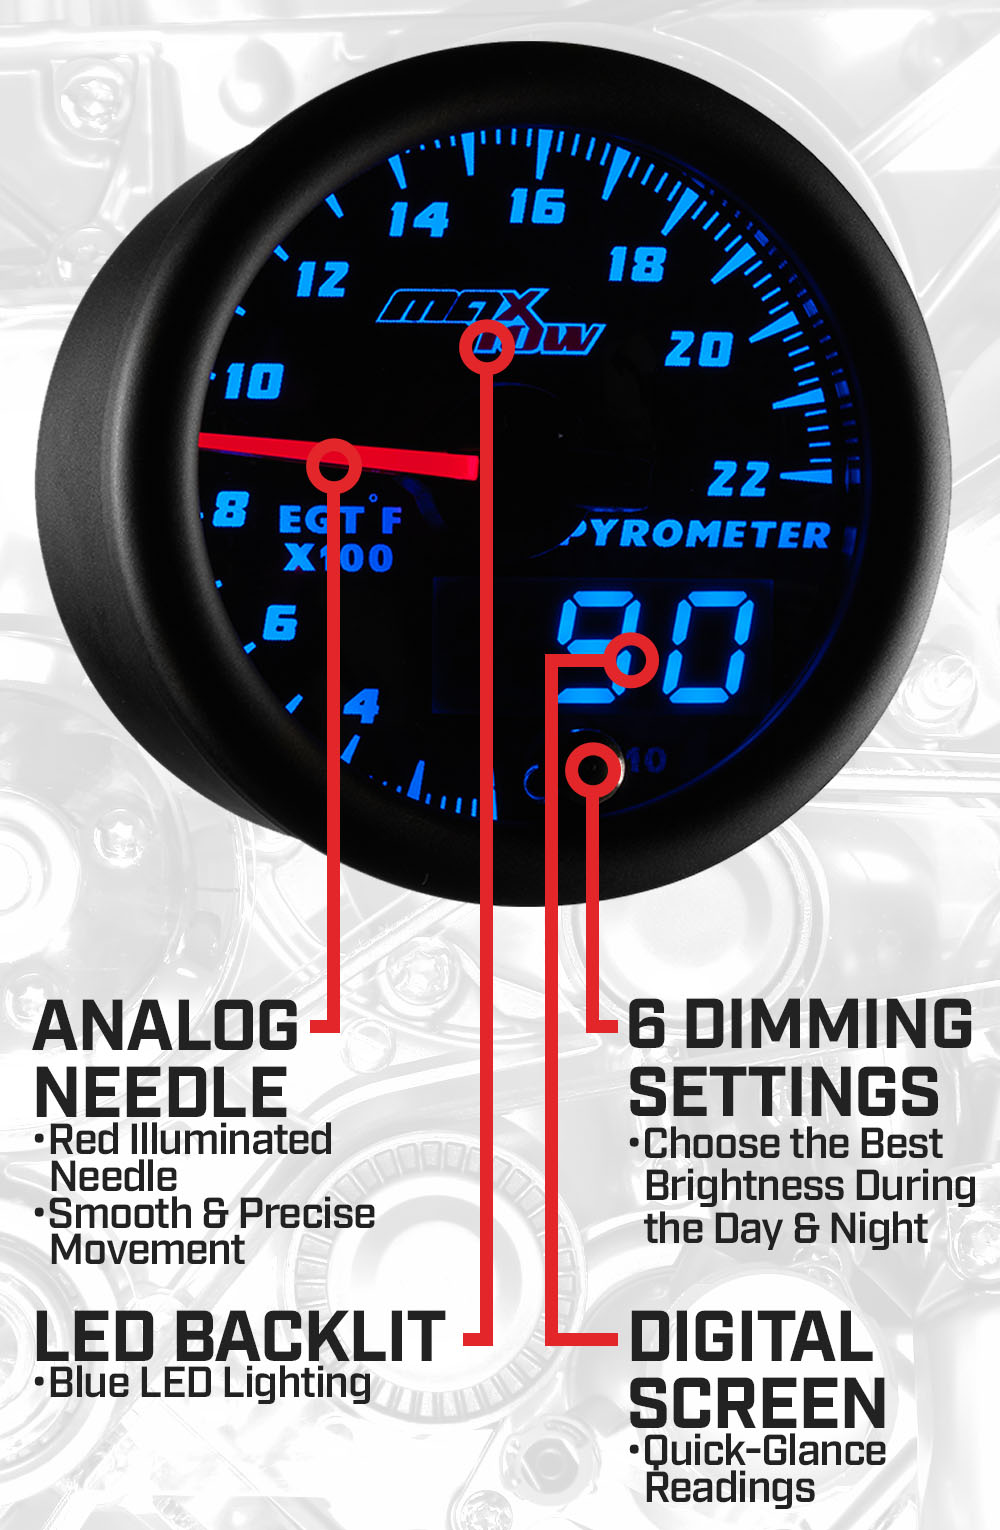 Black & Blue Double Vision 2200F Pyrometer EGT Gauge Features